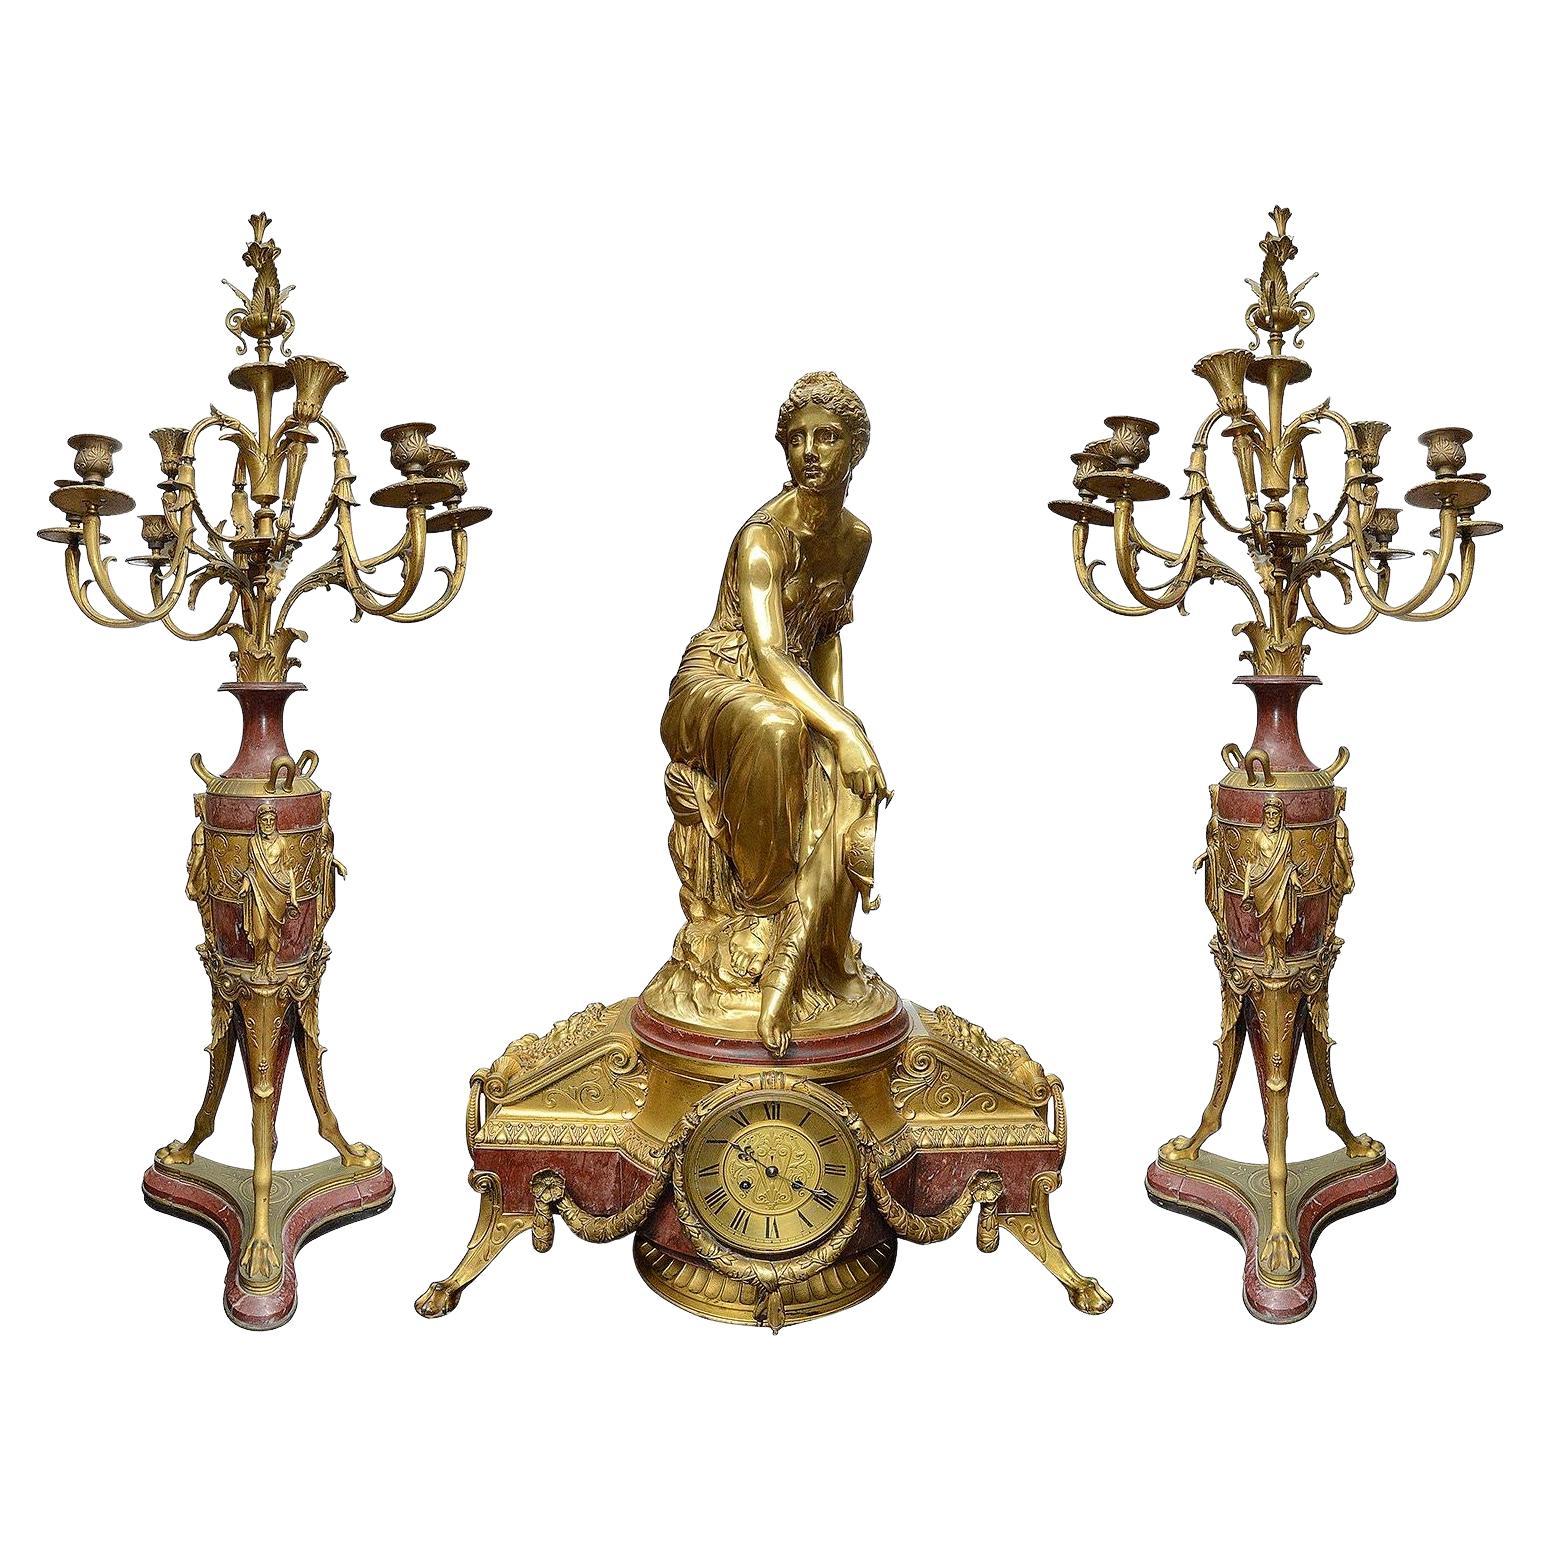 Gran juego de relojes de ormolina dorada estilo Luis XVI del siglo XIX.